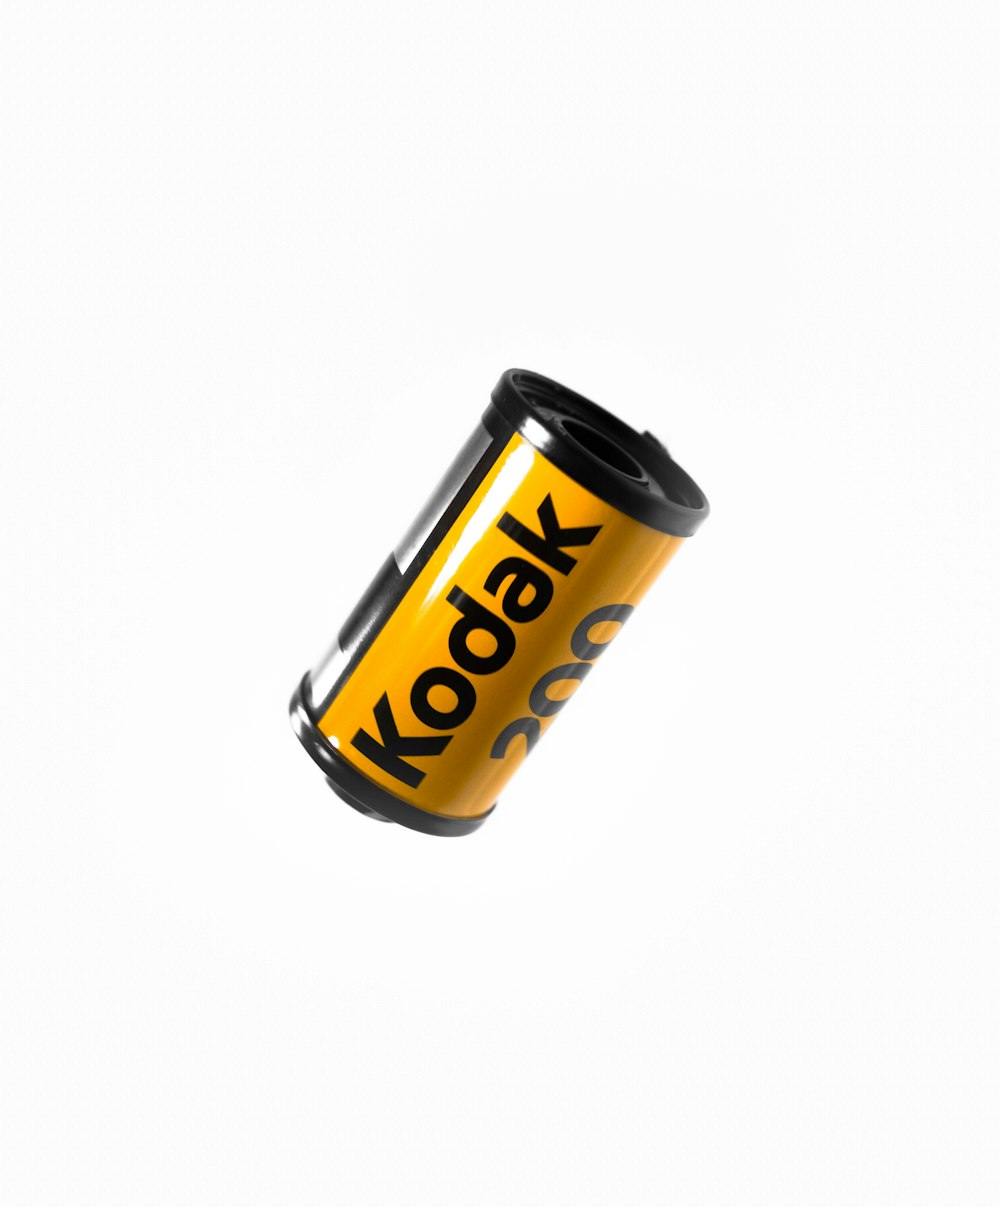 Filme para câmera Kodak